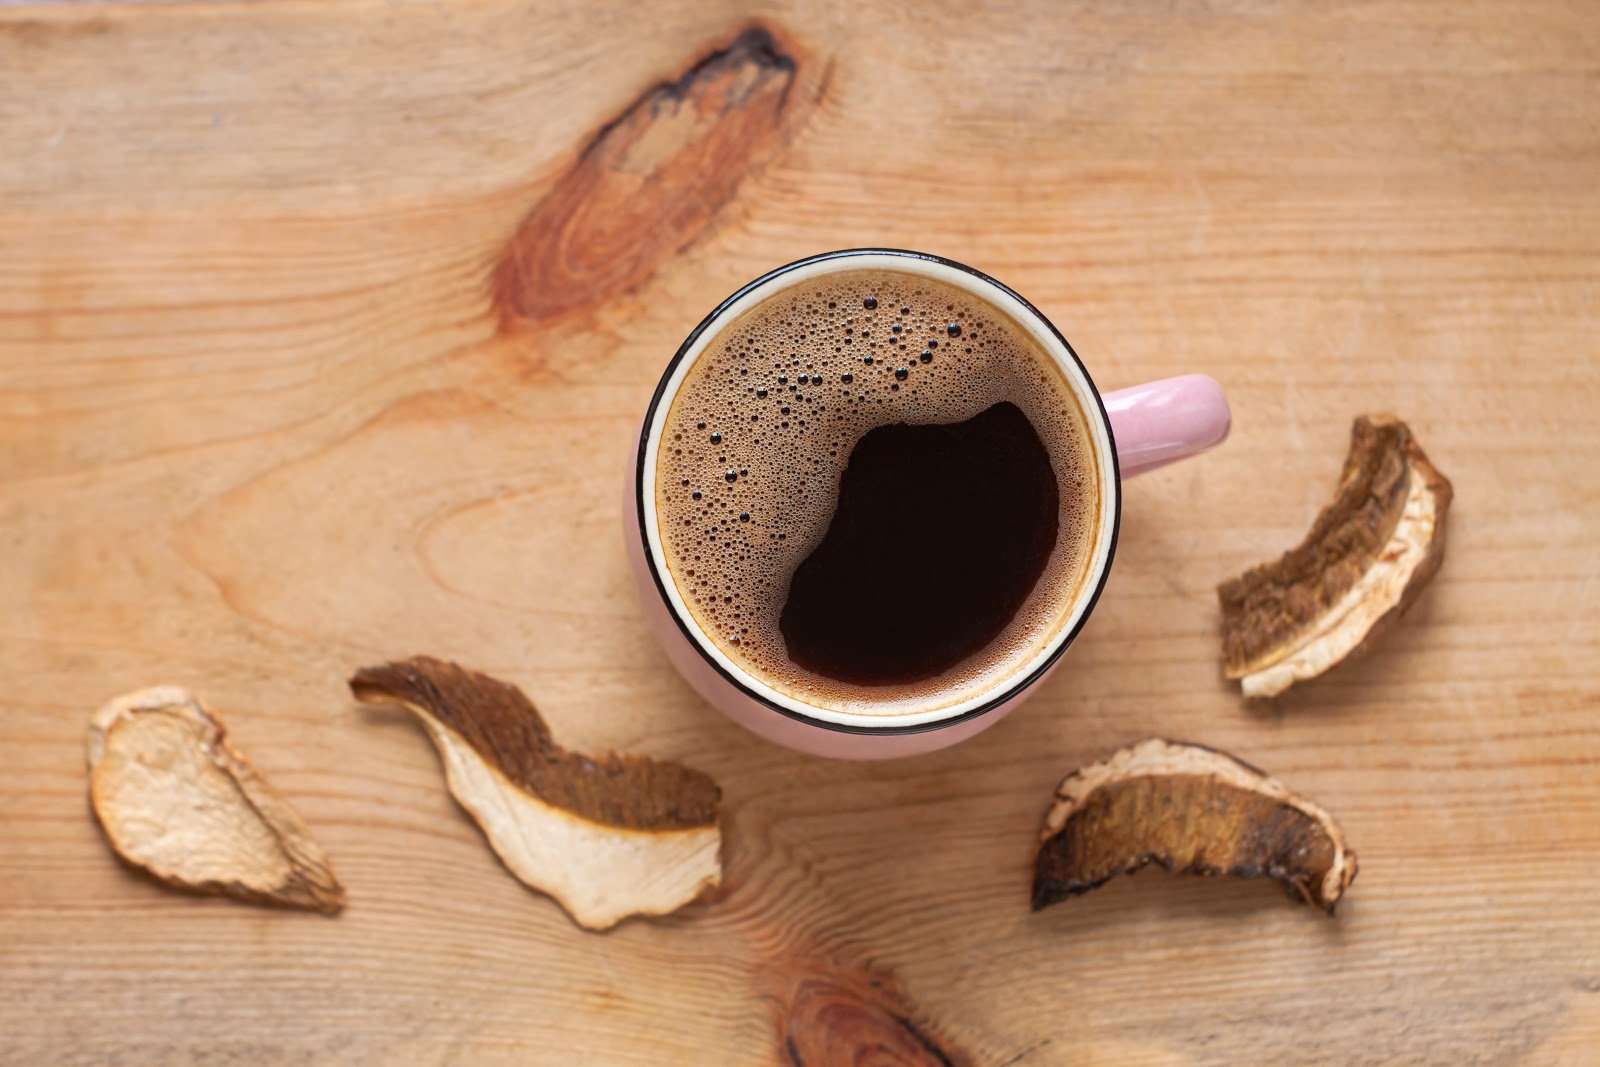 Is Mushroom Coffee Safe?